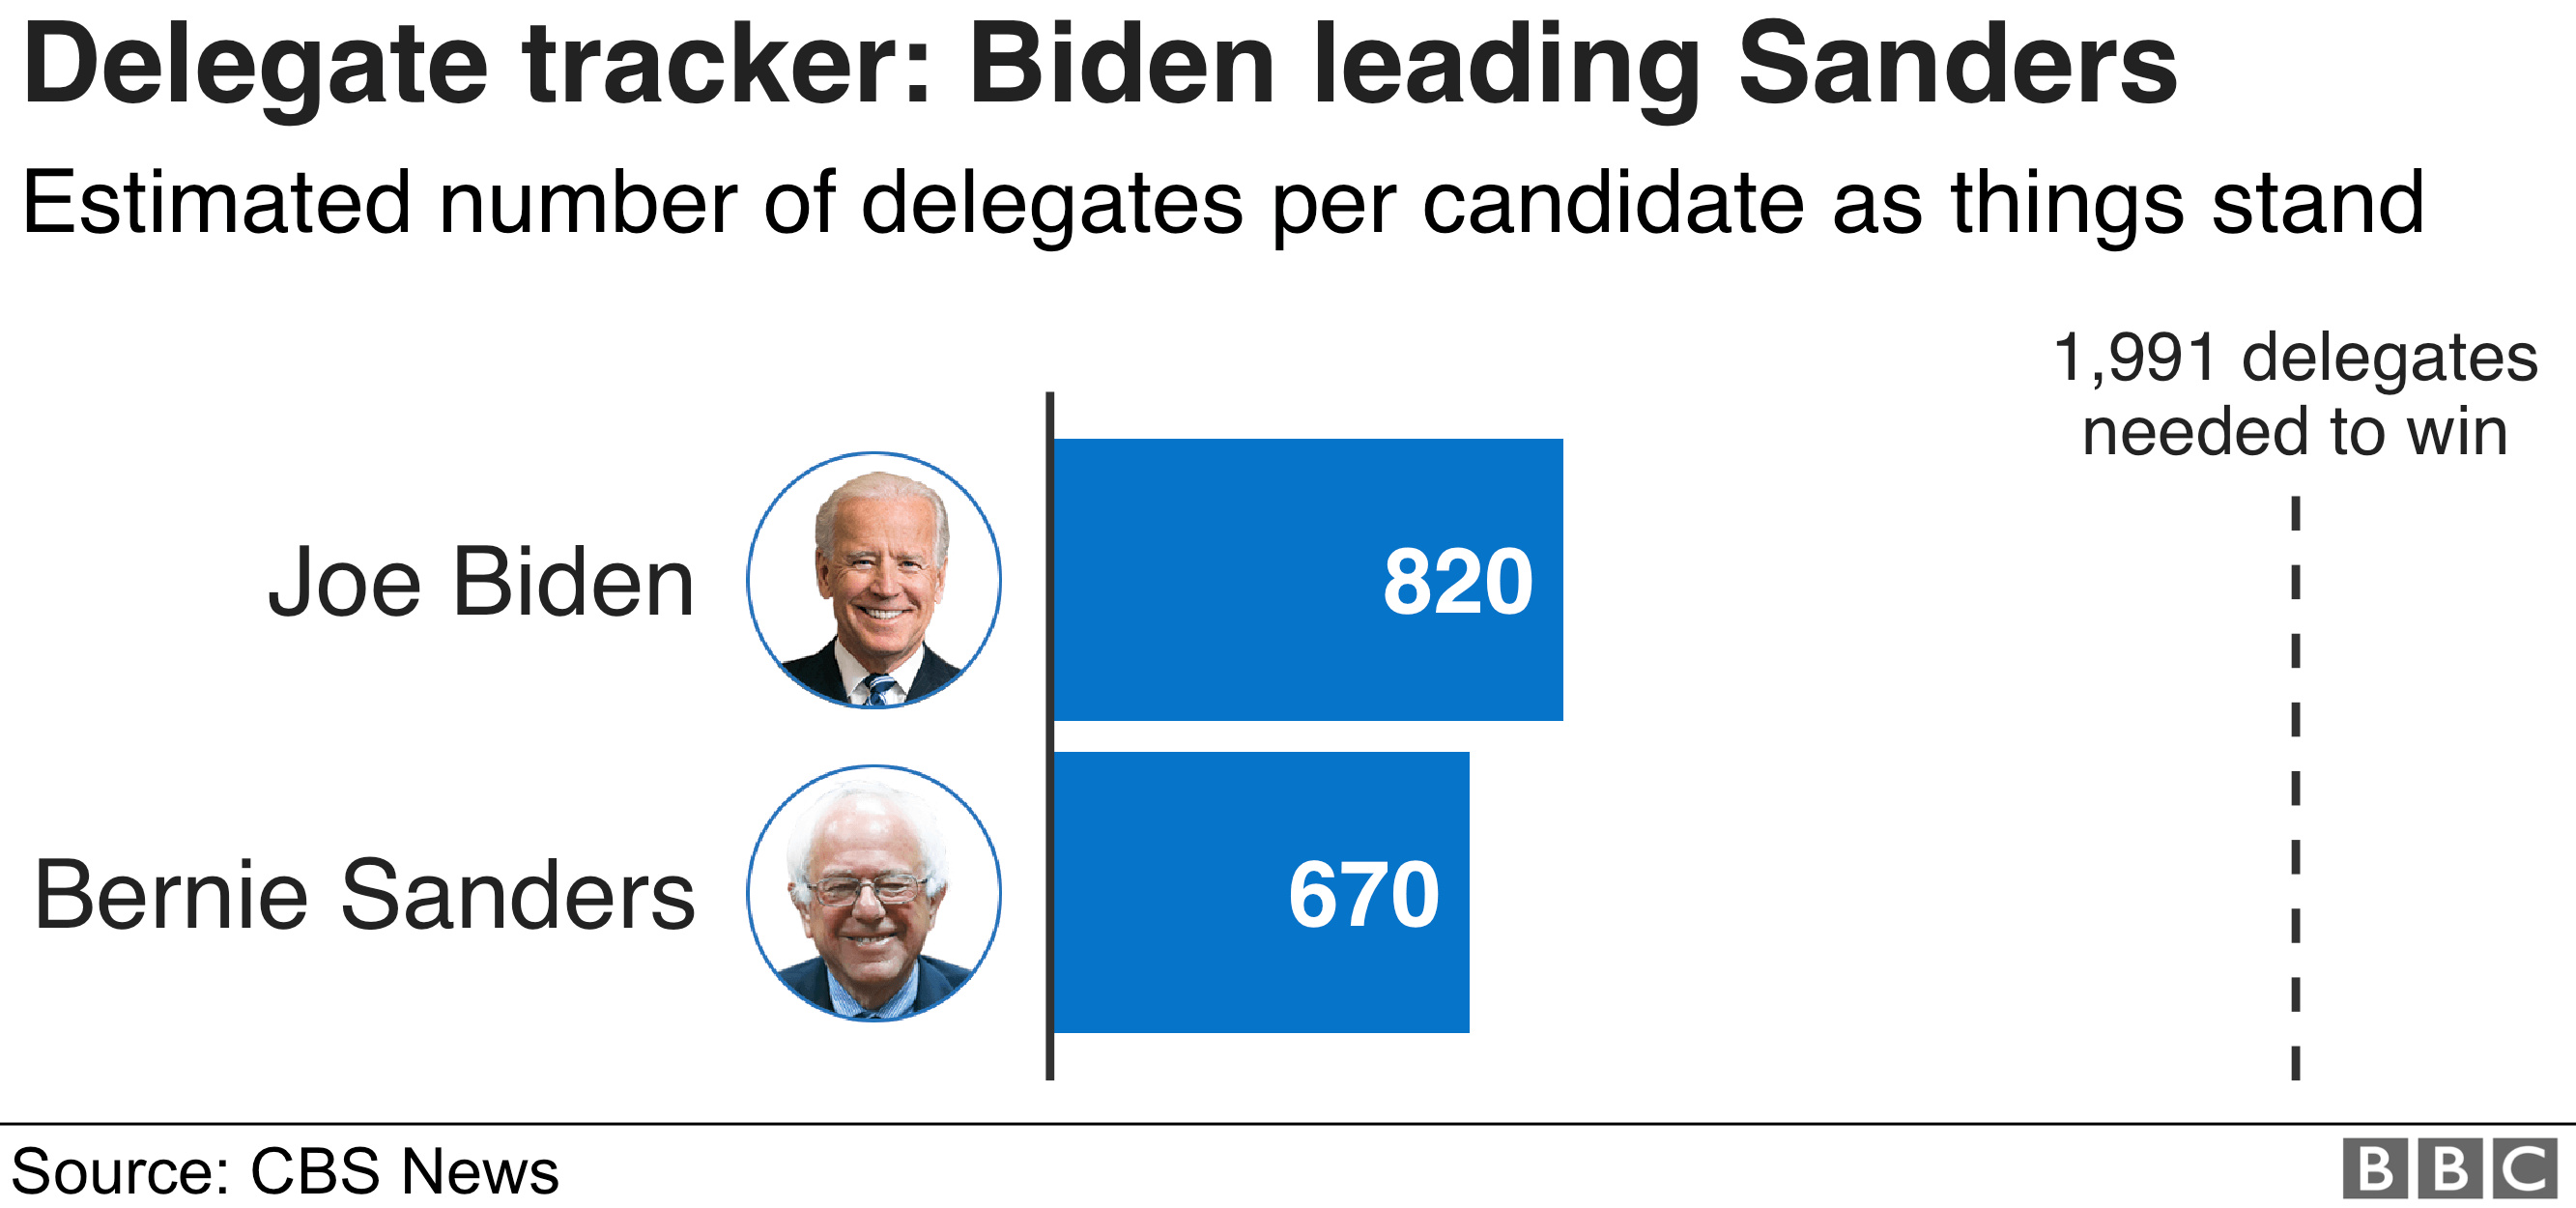 A delegate tracker showing Biden leading Sanders